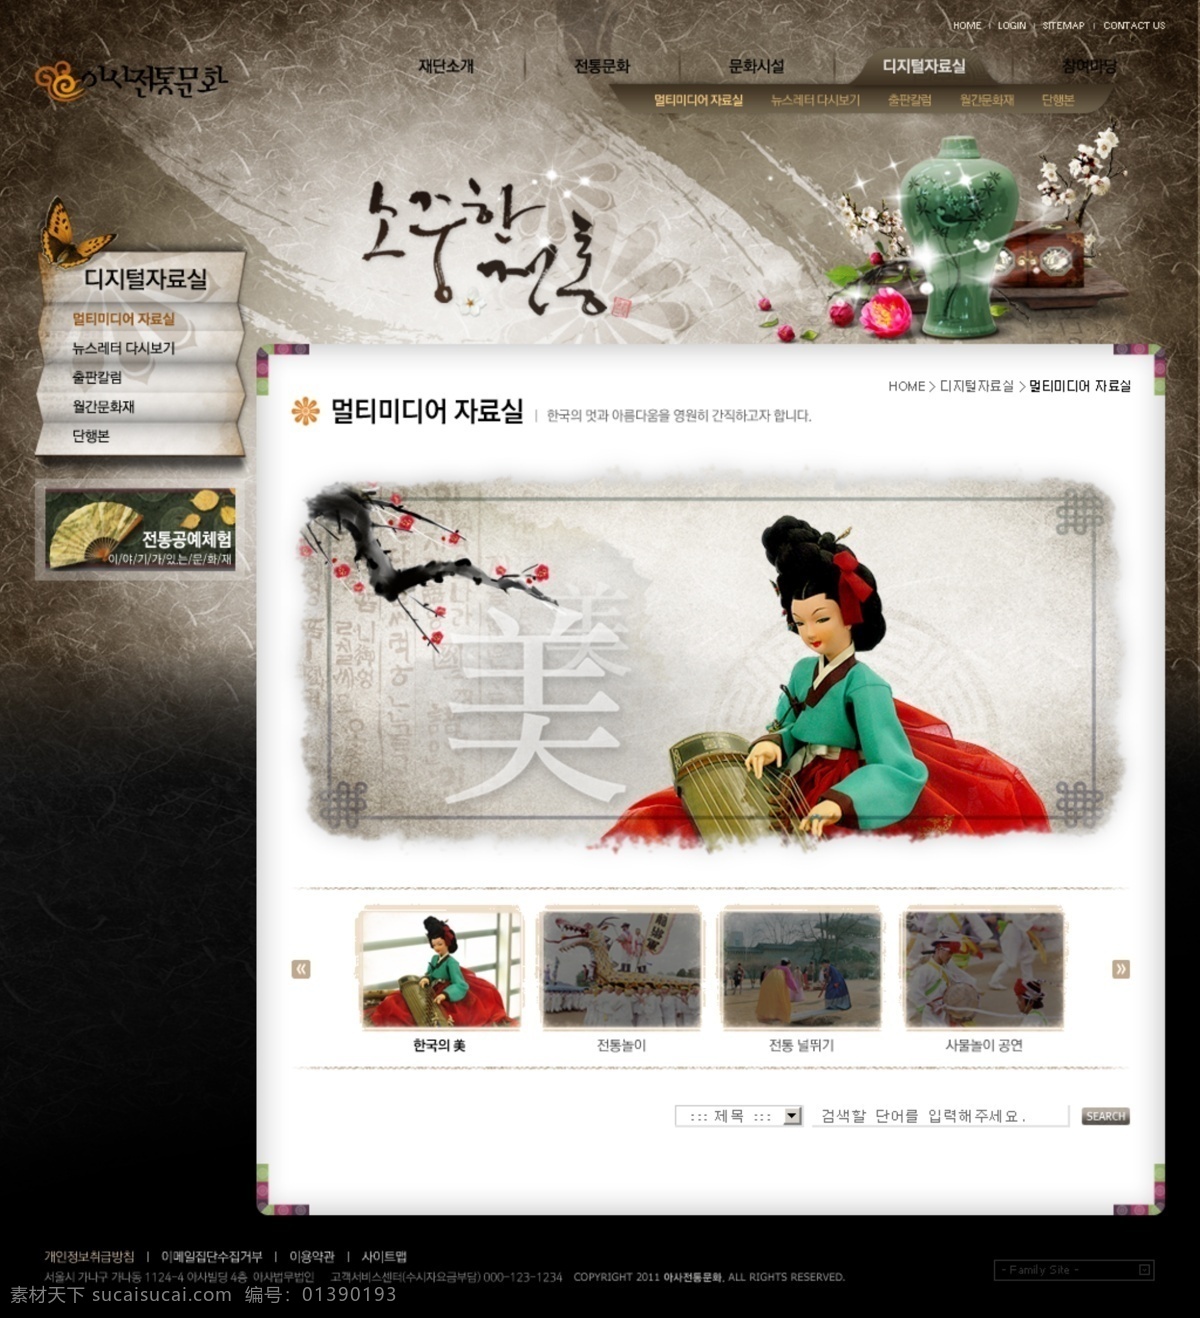 韩式 网站设计 psd模板 梅花 大长今服饰 韩式网站 网页素材 网页模板